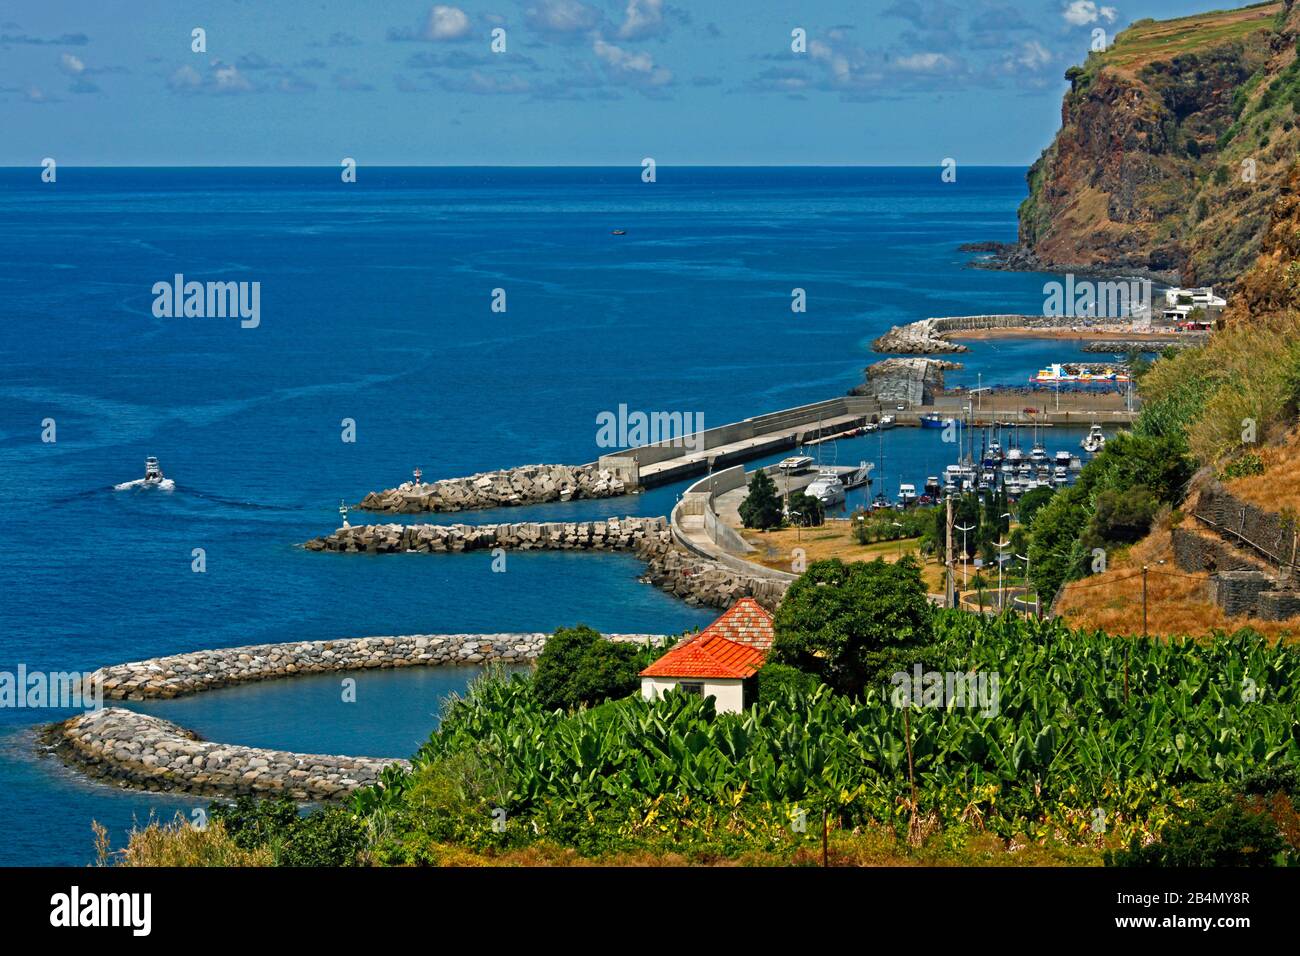 Banana plantation, fishing port, marina, Calheta, Madeira, Portugal Stock Photo